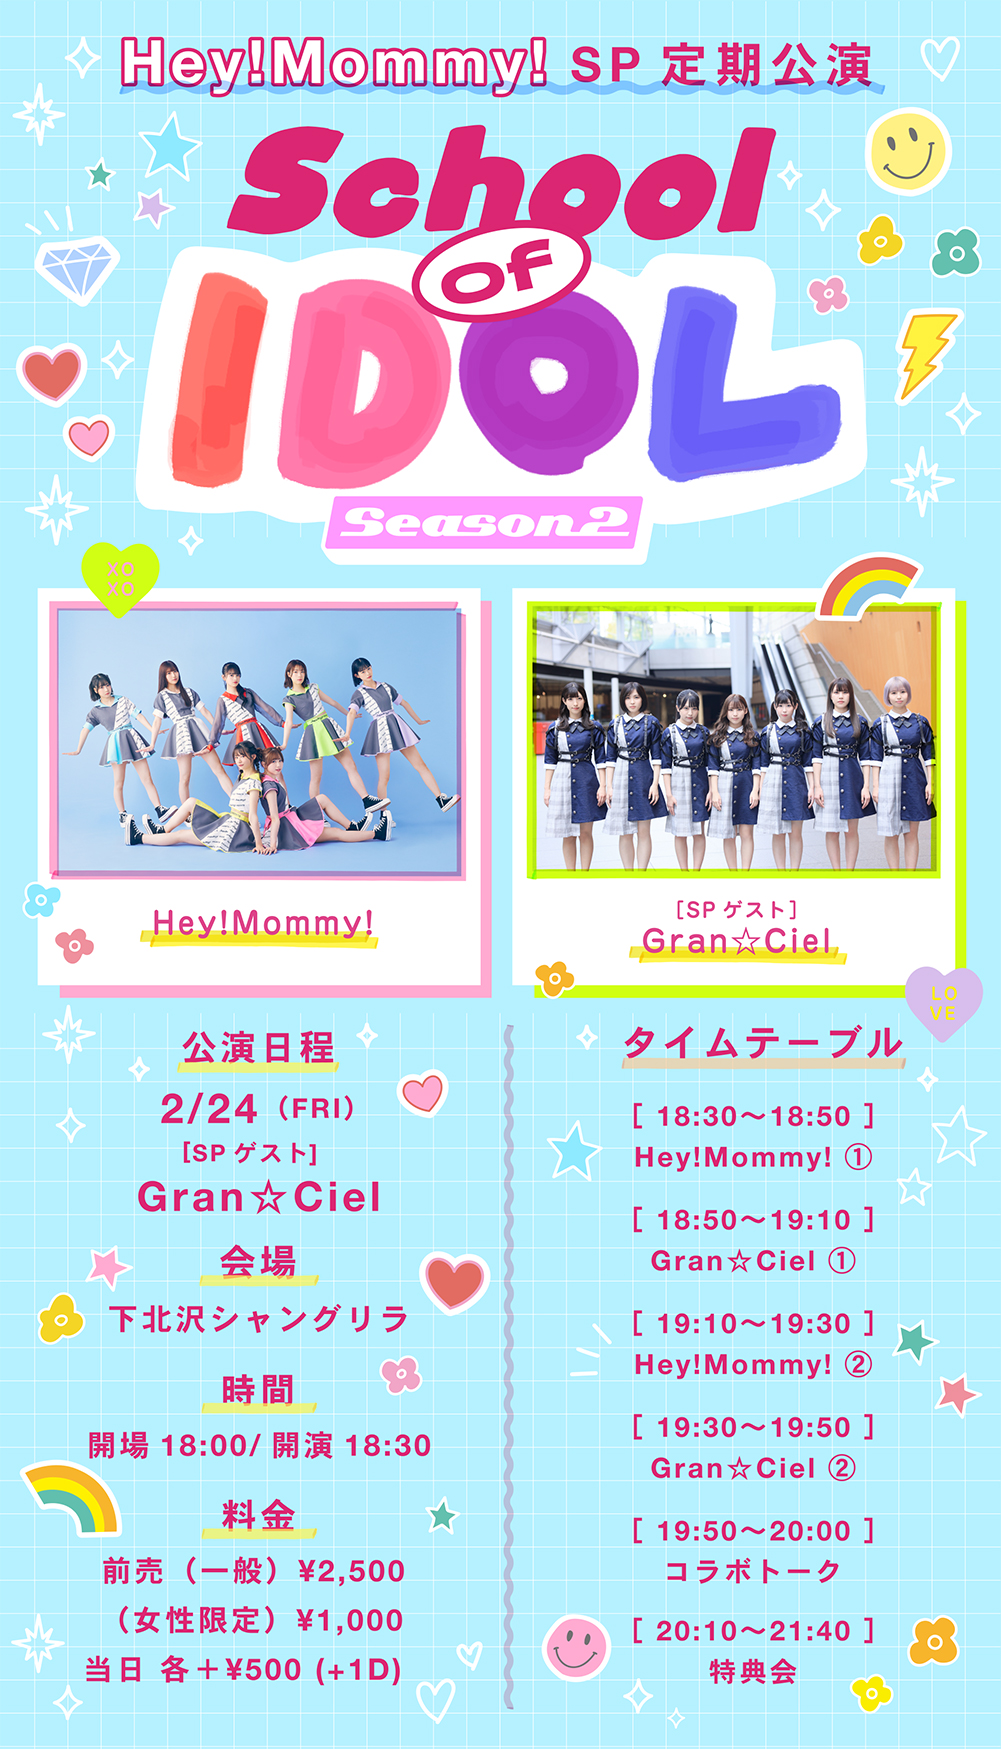 2/24(金) 開催「SP定期公演 School of IDOL Season 2」チケット発売情報